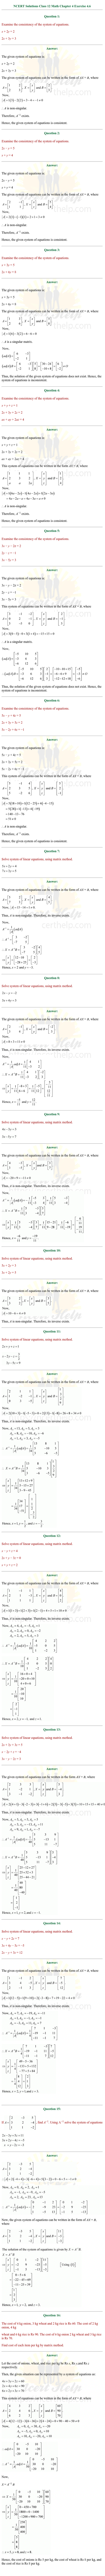 ex.4.6 Class 12 Math Chapter 4 ncert solutions